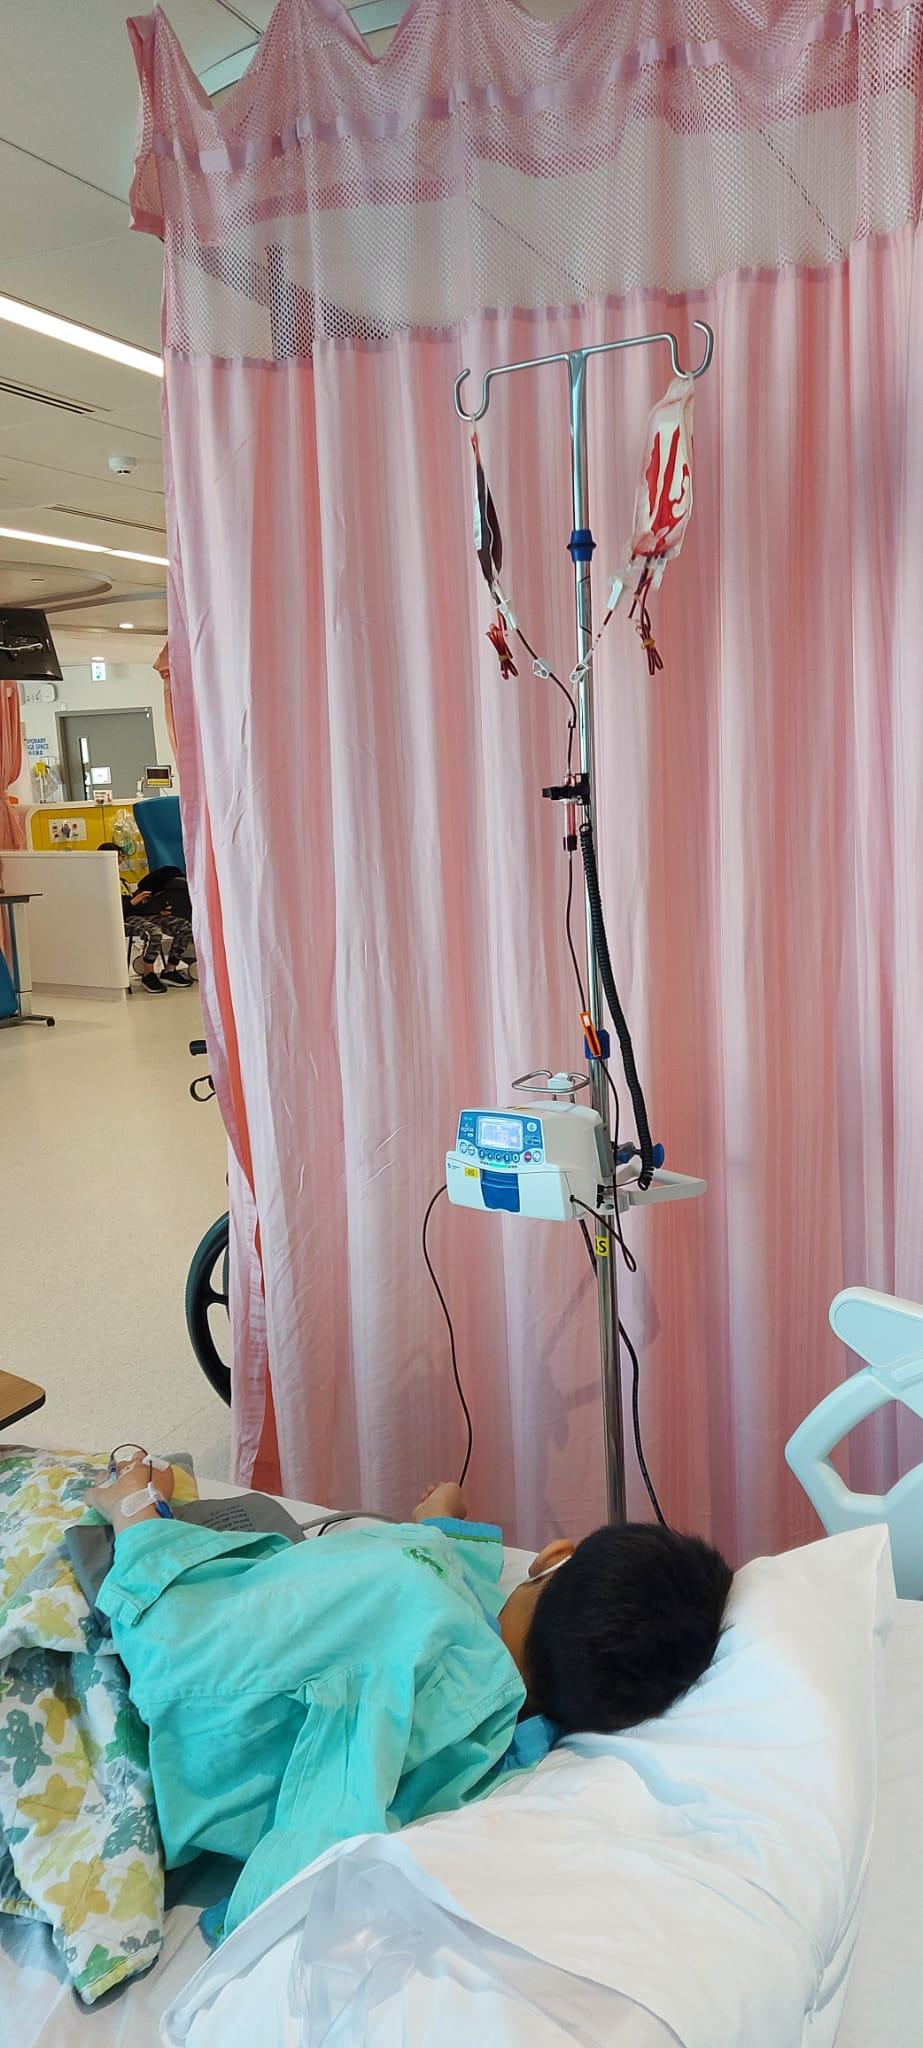 香港紅十字會輸血服務中心今日（十二月二日）呼籲市民盡快捐血，補充本地血庫。圖示重型地中海貧血症患者賢仔（化名）到醫院接受輸血治療。